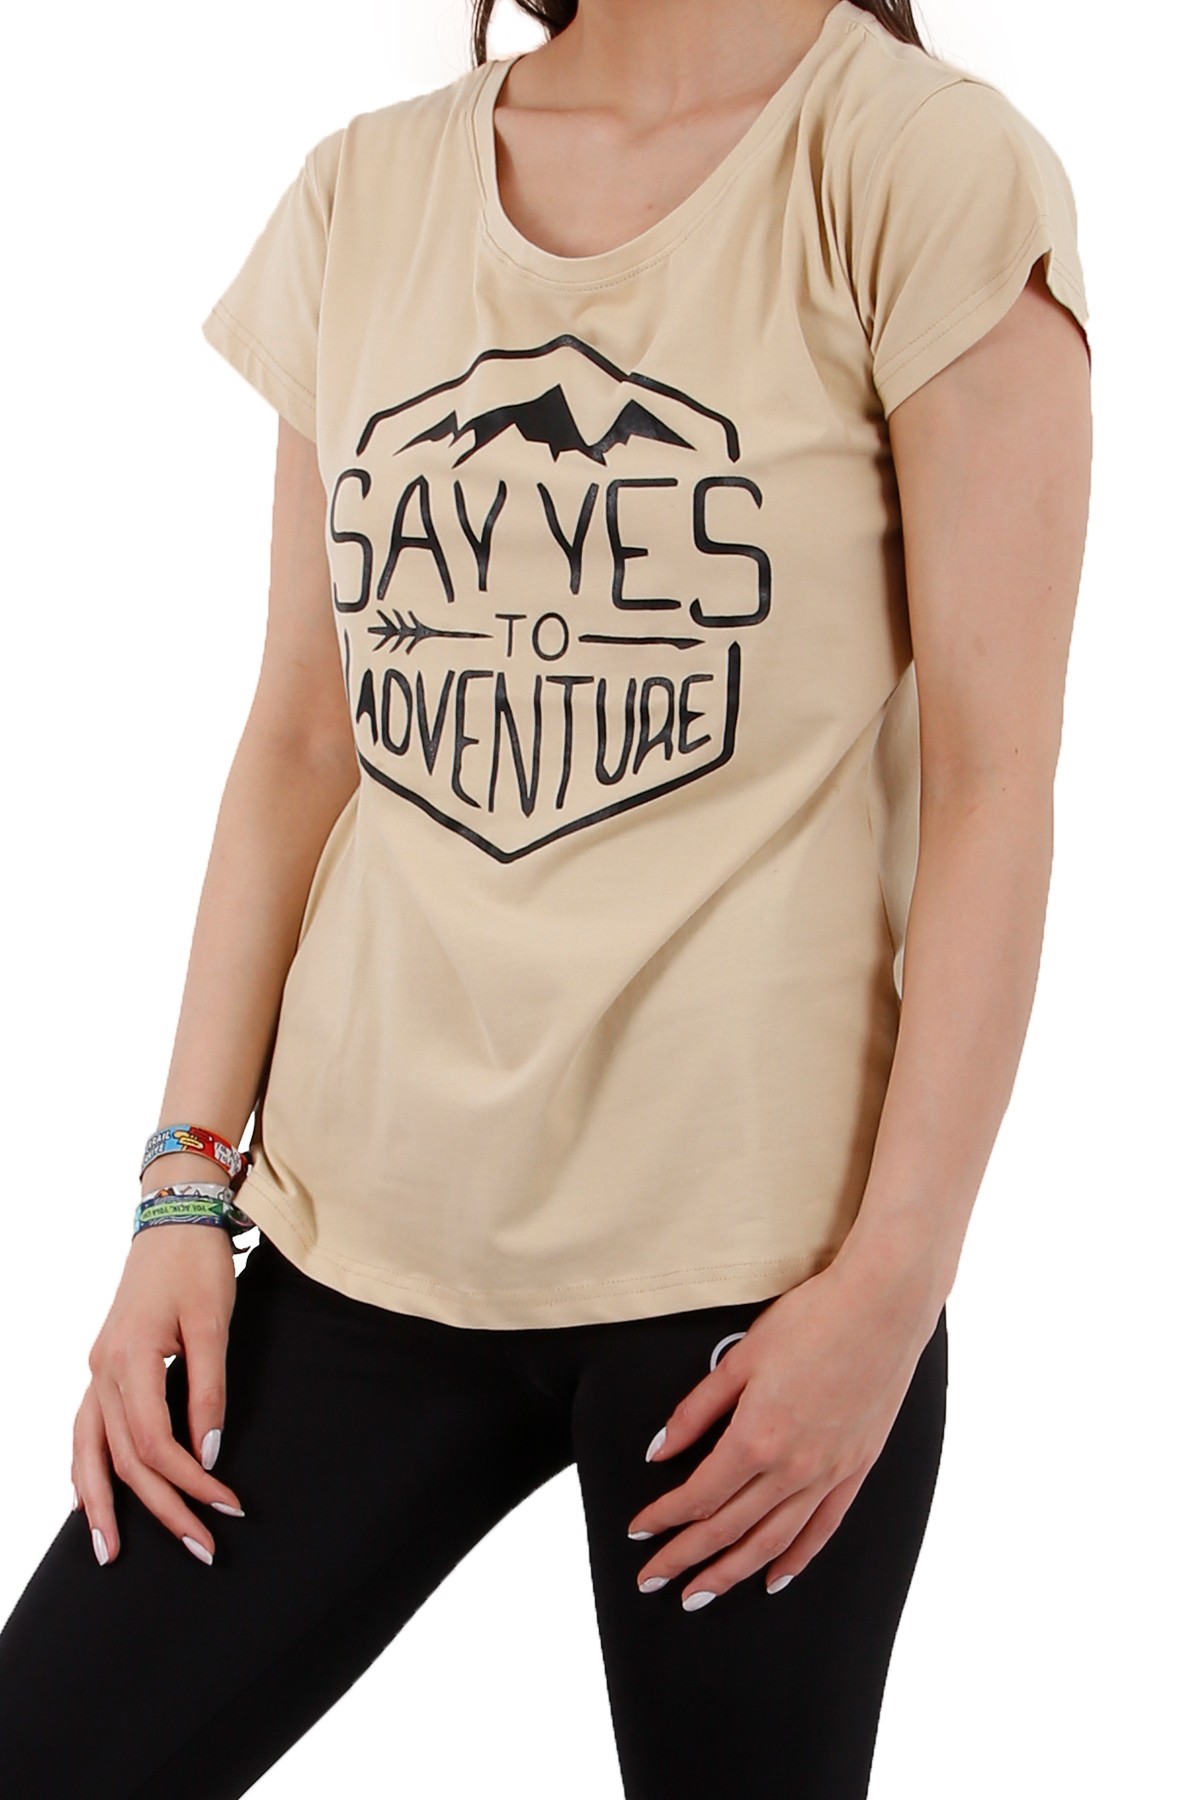 "Say Yes To Adventure" Özel Tasarım Kadın T-Shirt / Bej